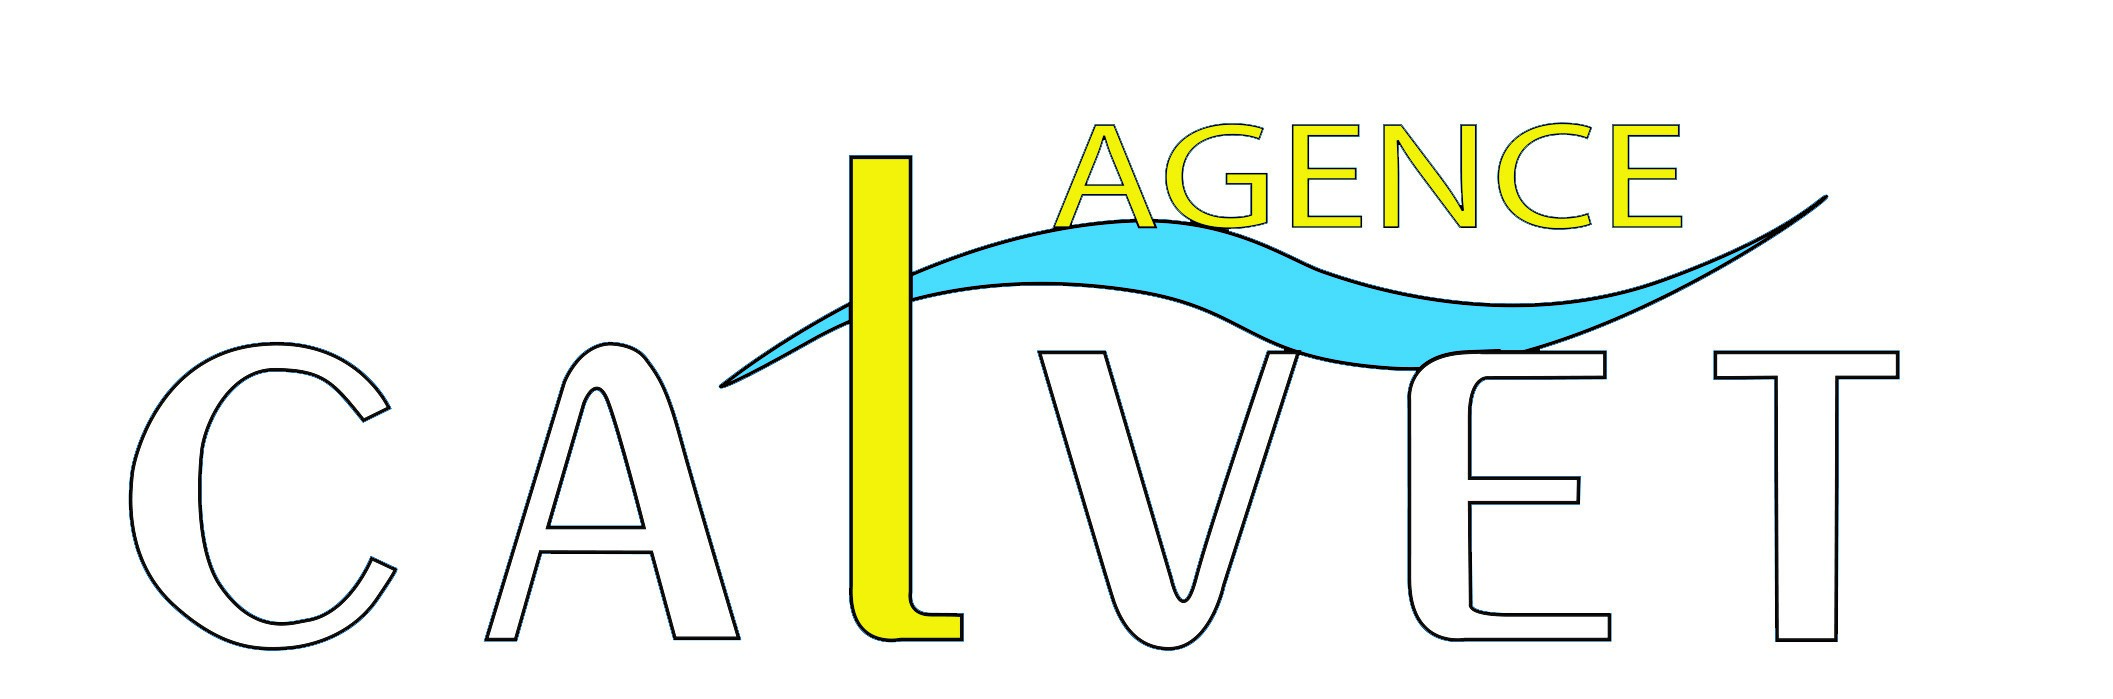 Agence Agence Calvet